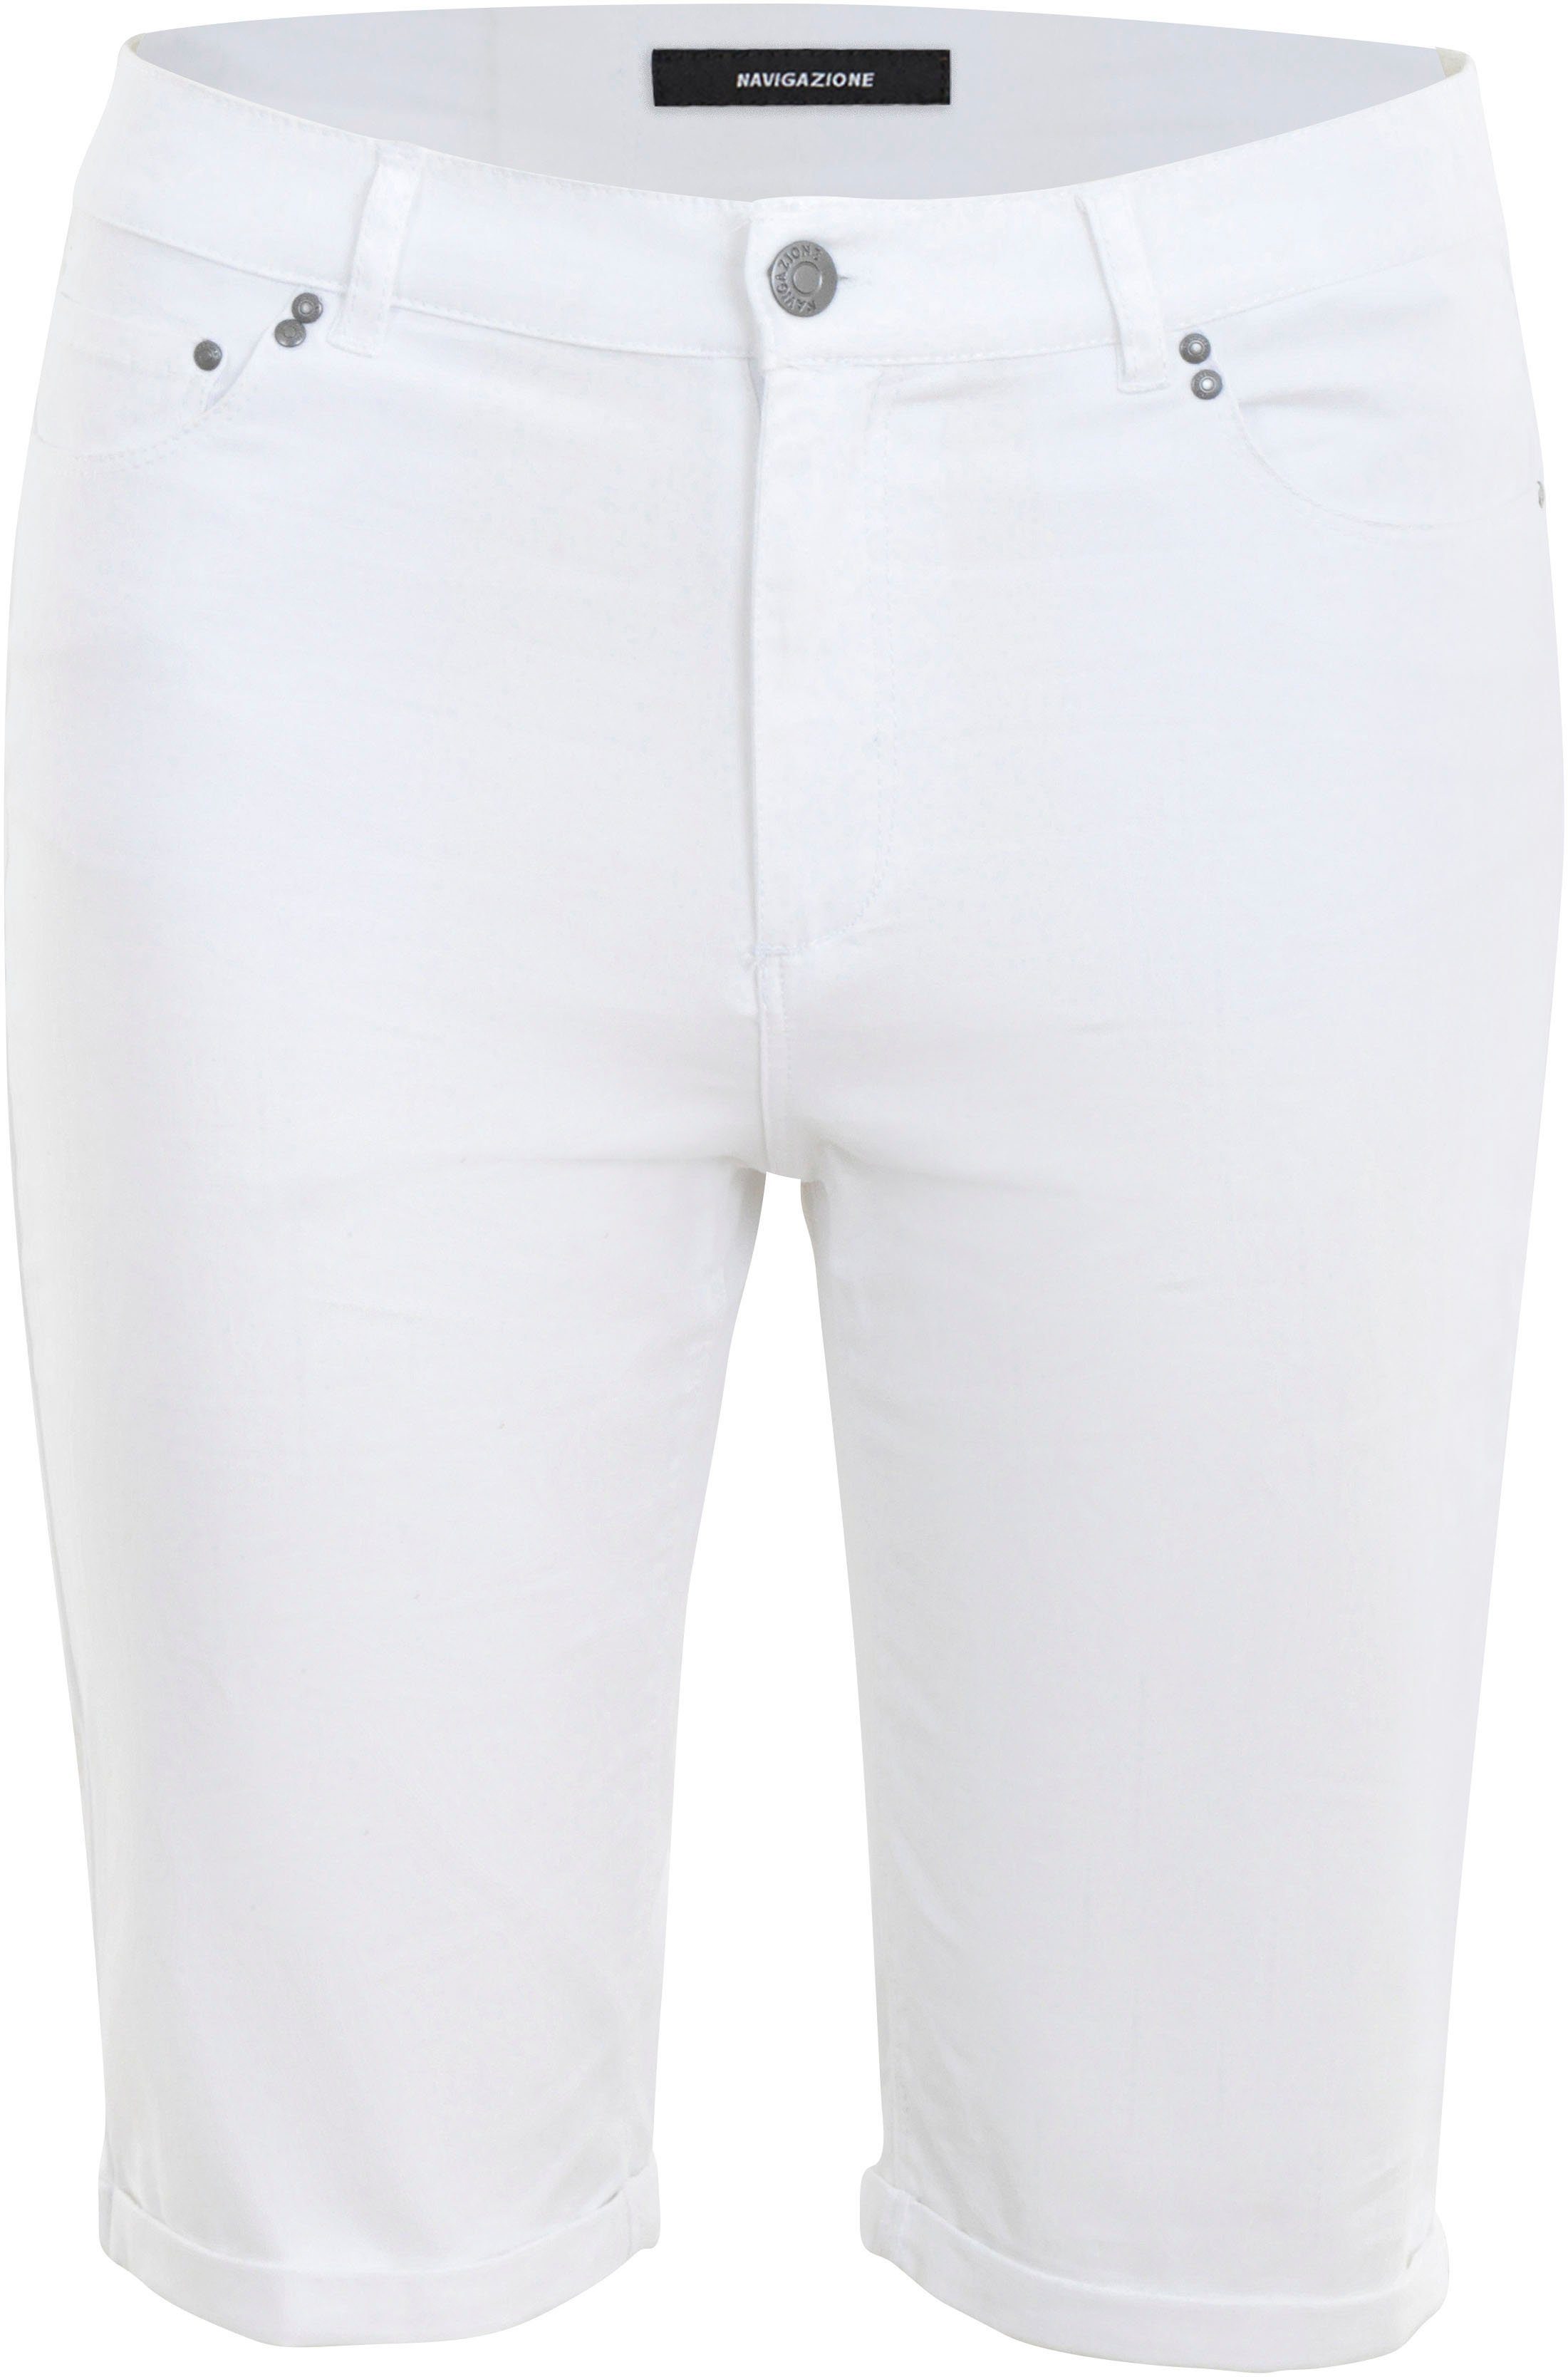 Form weiß 5-Pocket in NAVIGAZIONE Shorts